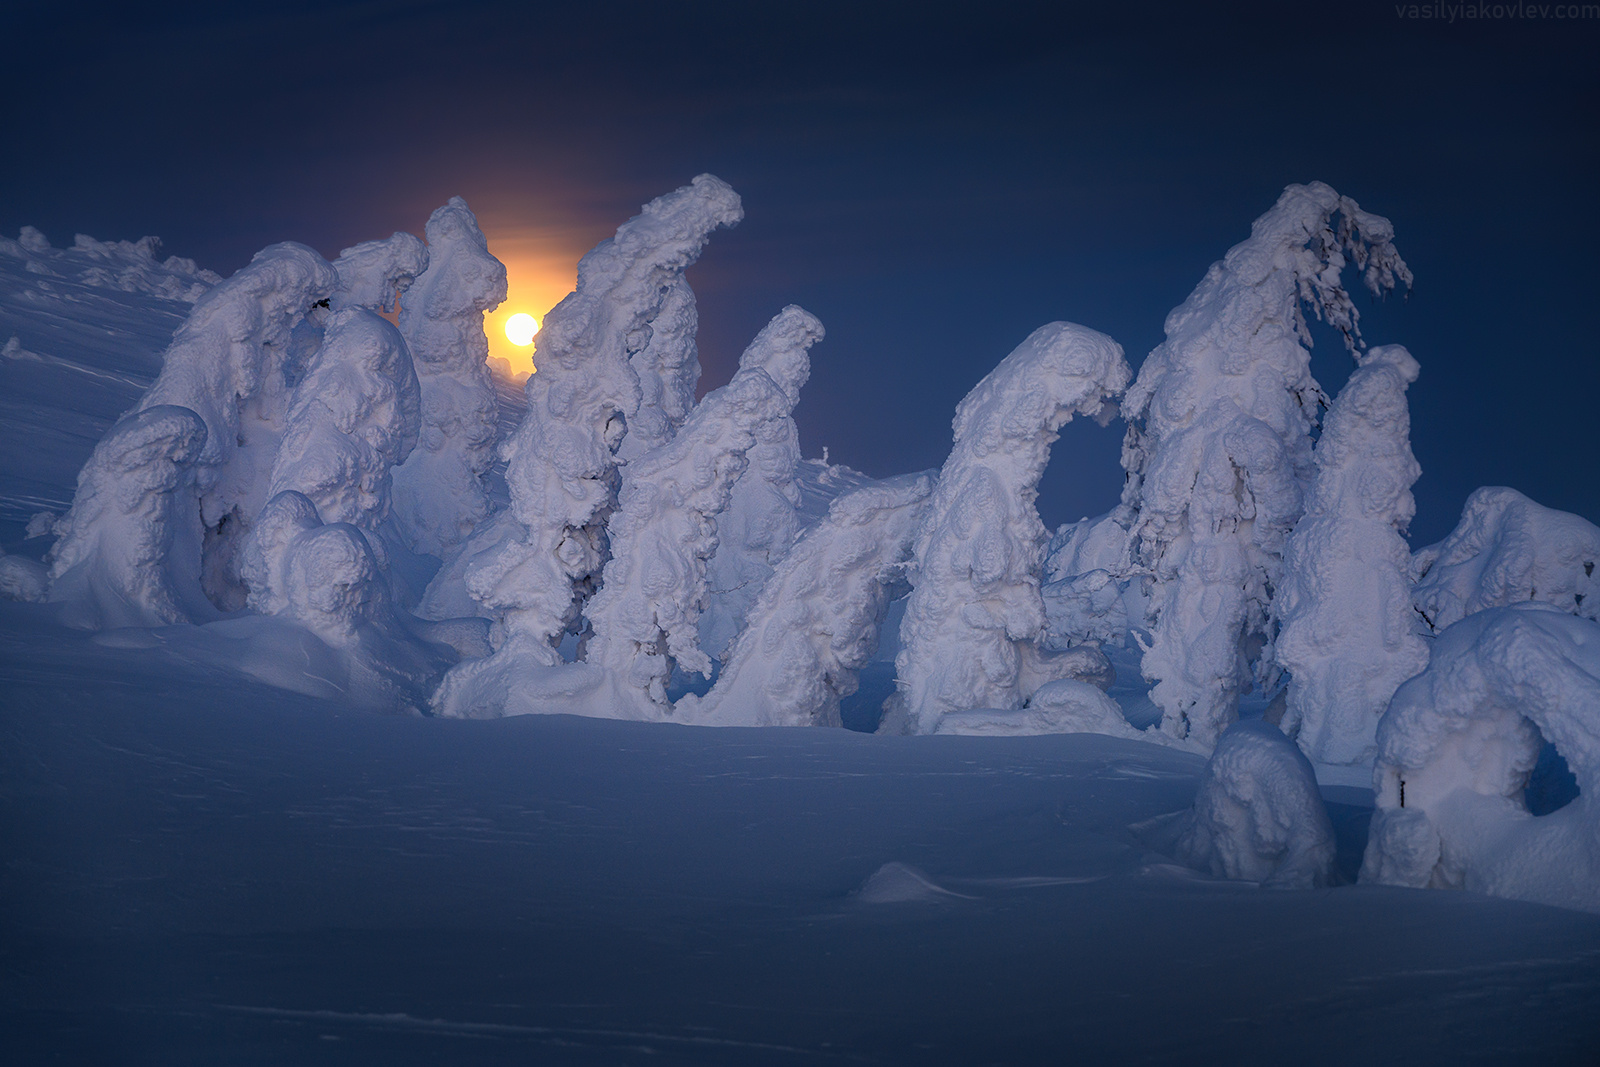 Идущие в ночи гух урал россия зима горы снег василийяковлев яковлевфототур